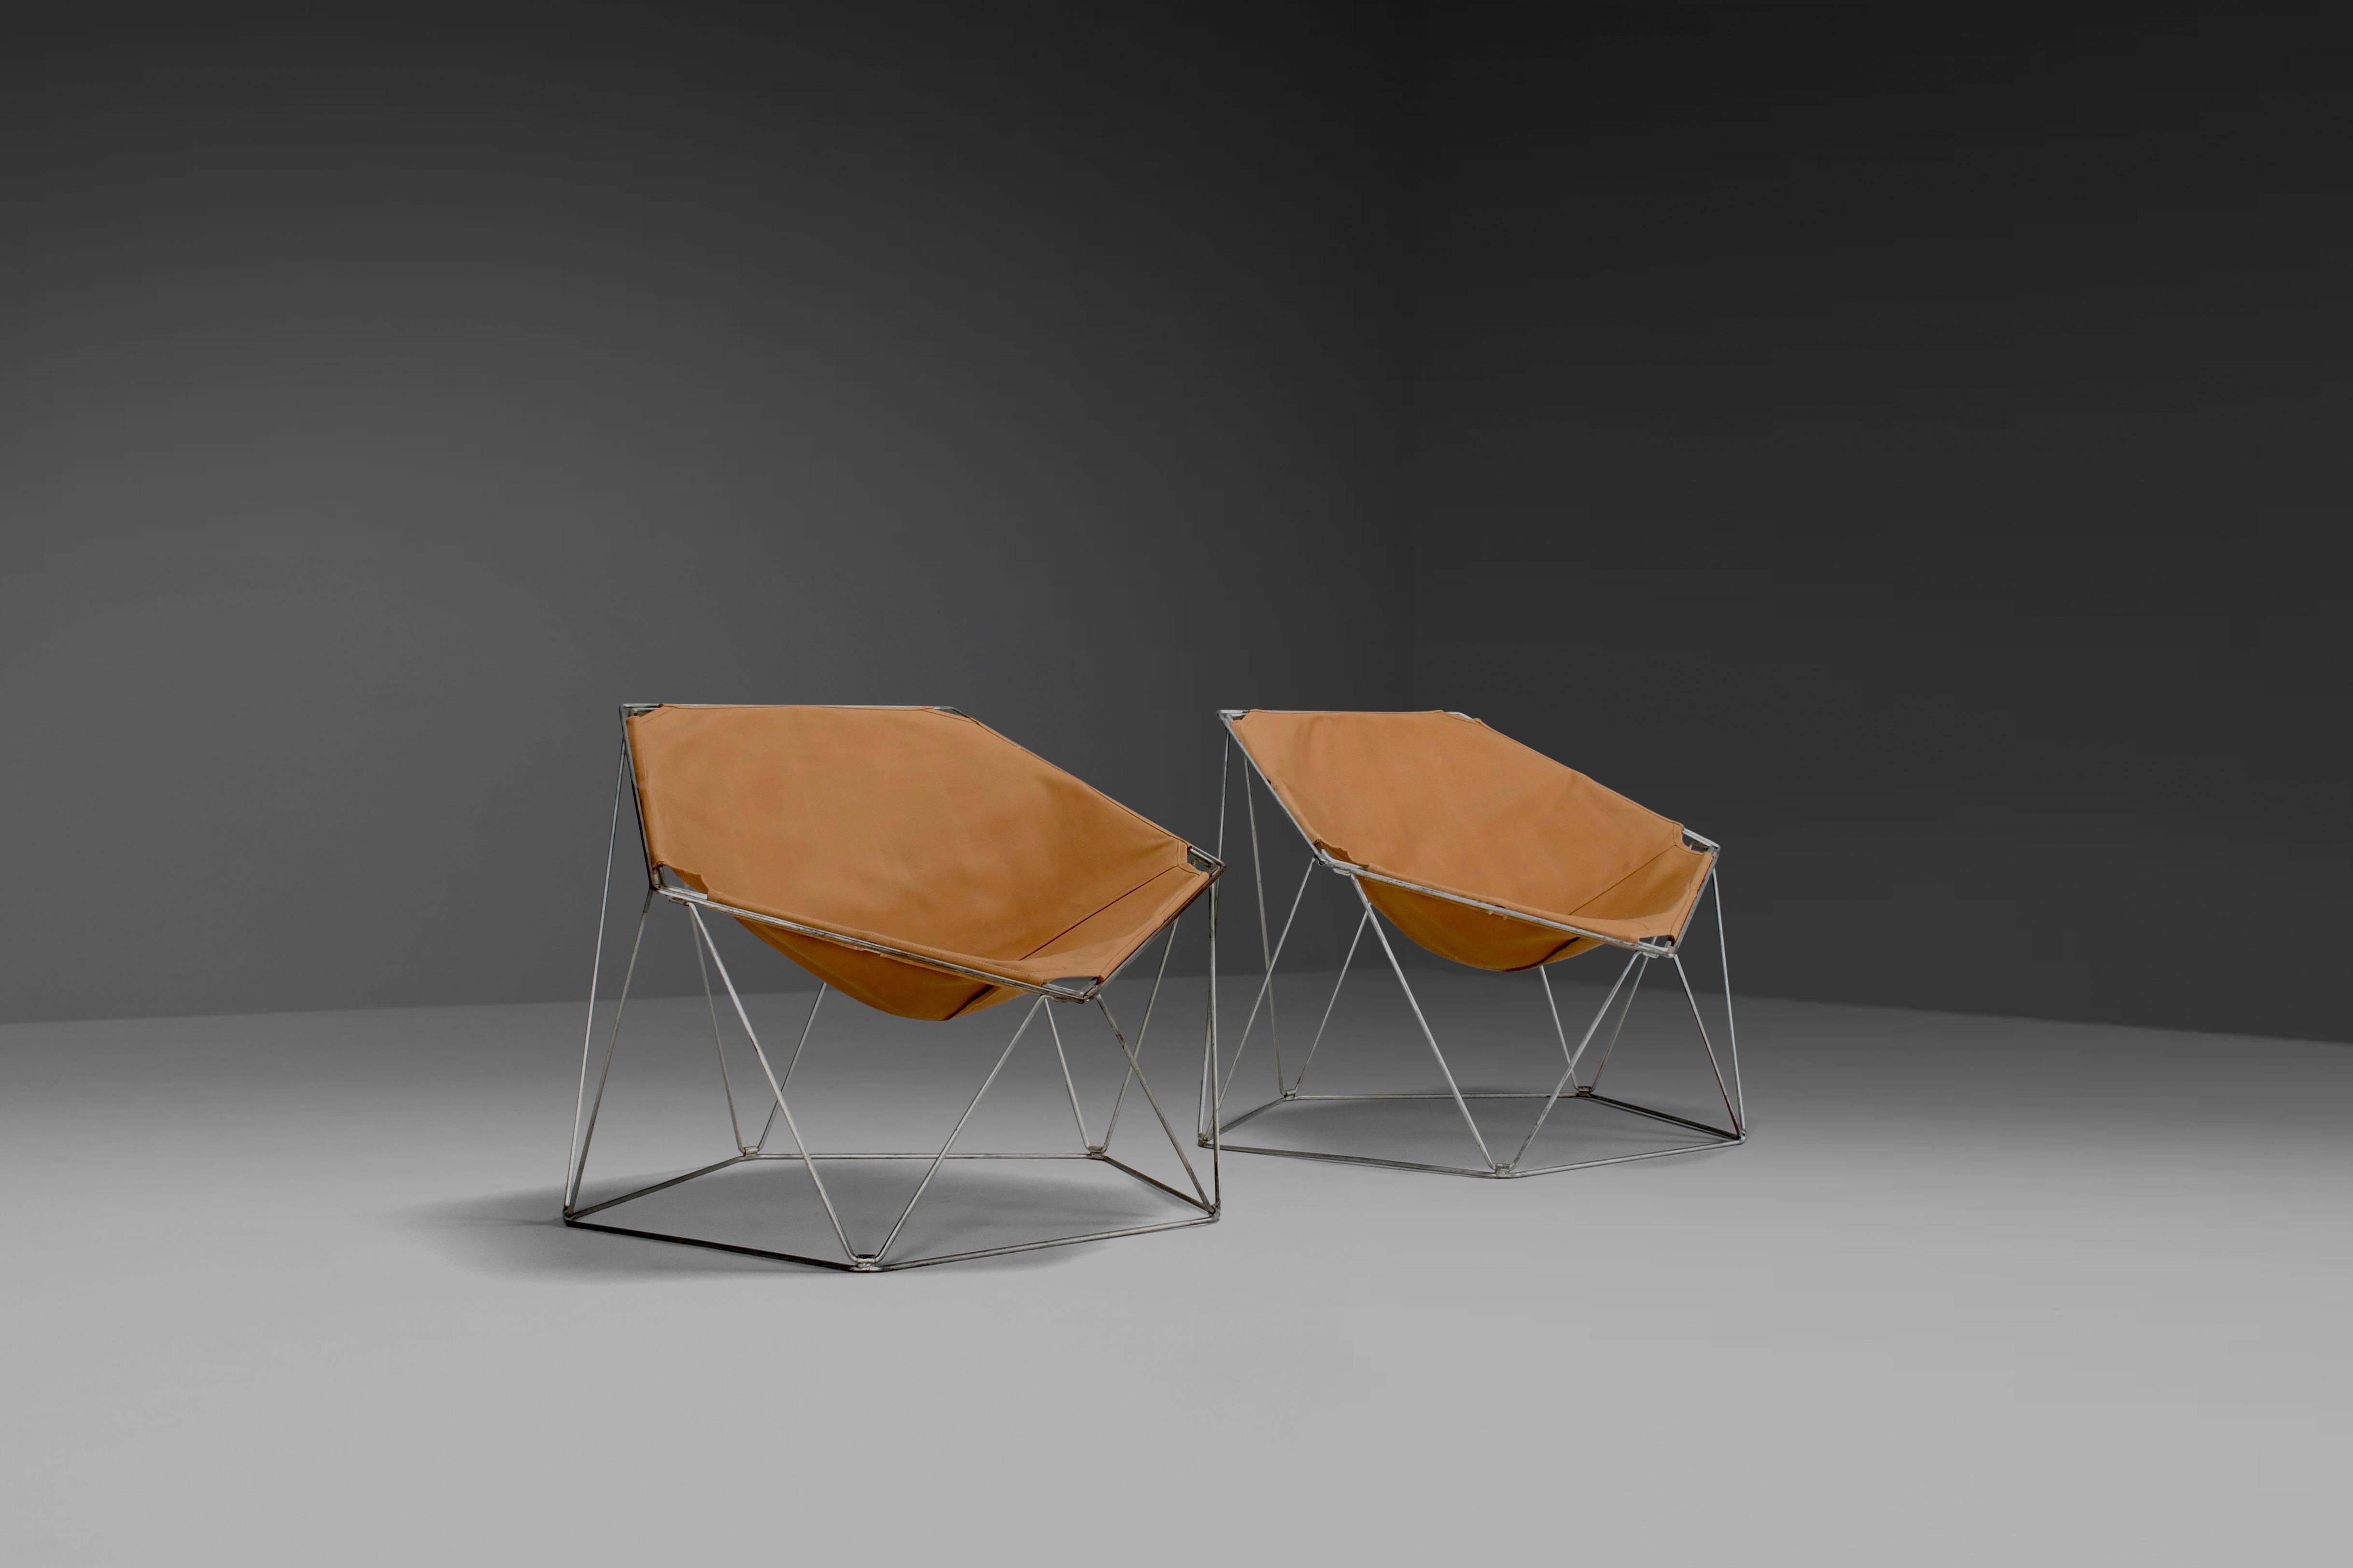 Satz früher Penta-Stühle in sehr gutem Zustand.

Entworfen von Jean-Paul Barray und Kim Moltzer. 

Hergestellt von Bofinger in den 1960er Jahren.

Die Stühle haben einen zinkfarbenen Metalldrahtrahmen in Fünf-Ecken-Form, der zur einfachen Lagerung